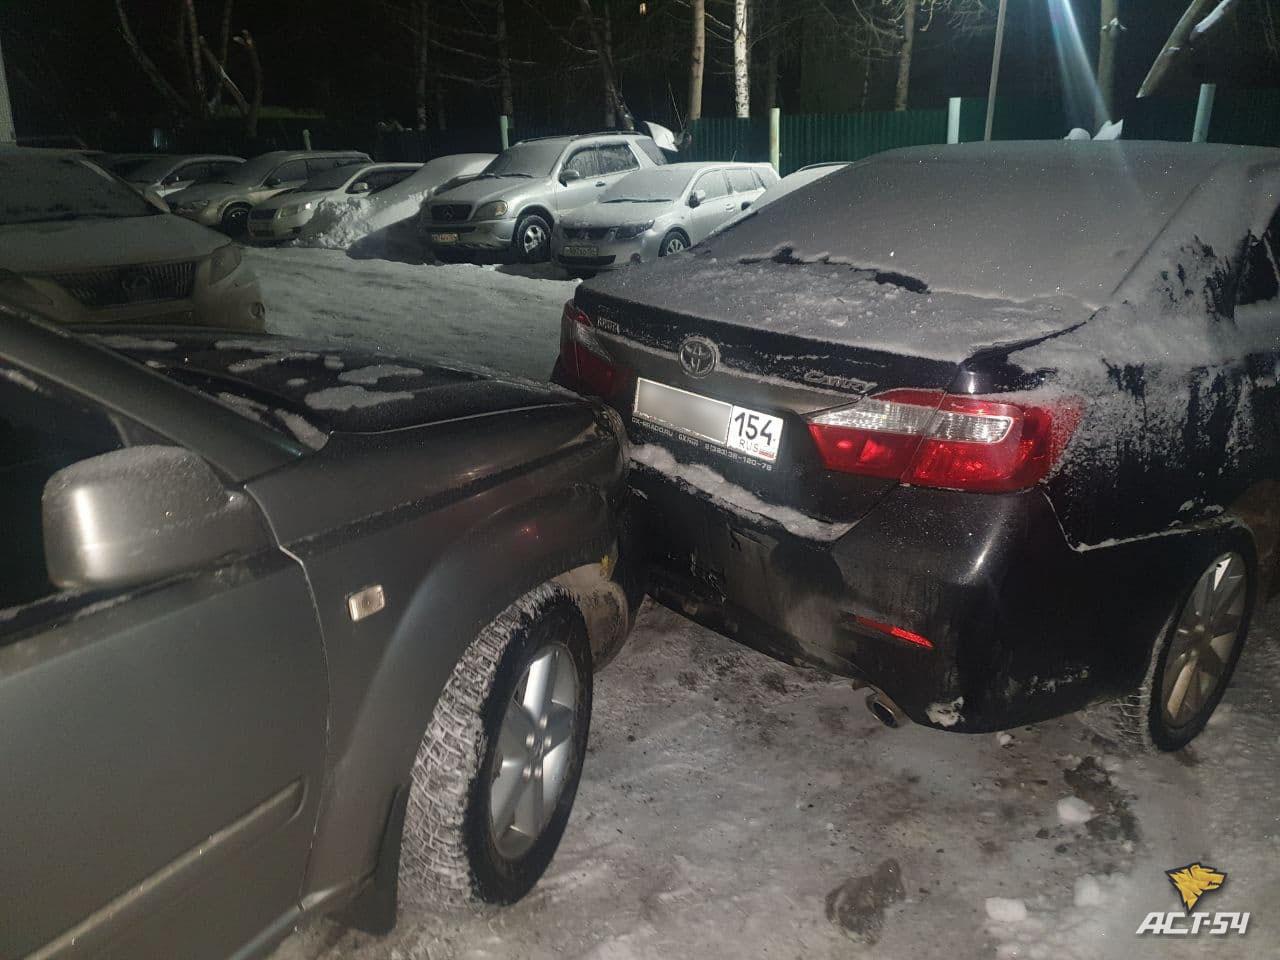 Фото В Новосибирске пьяный водитель на Subaru разбил семь машин во дворе 3